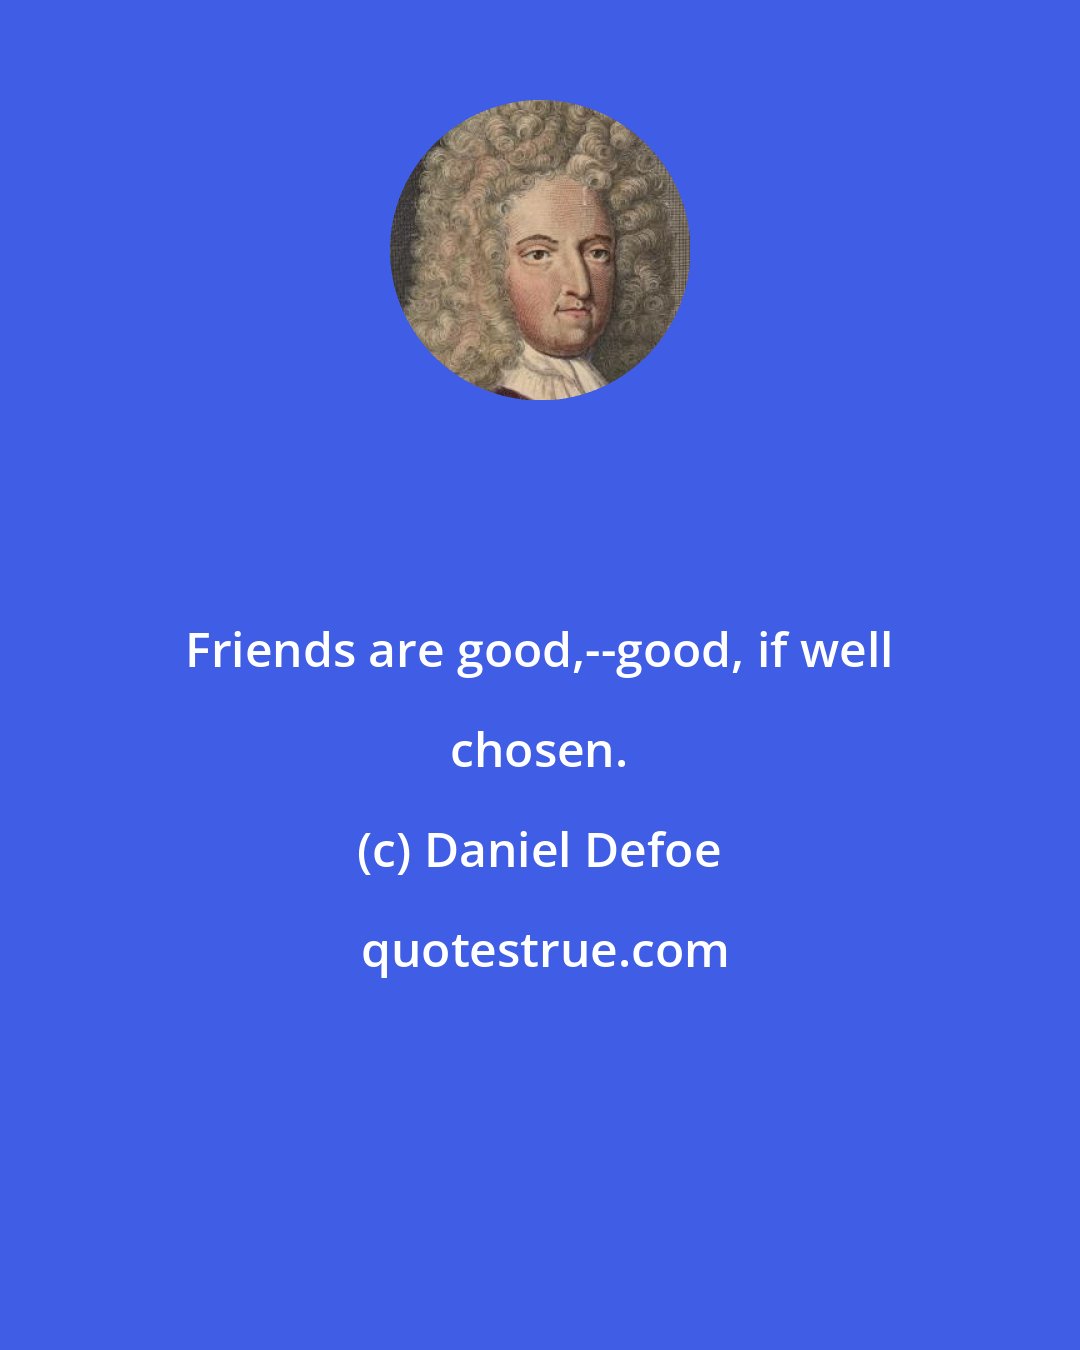 Daniel Defoe: Friends are good,--good, if well chosen.